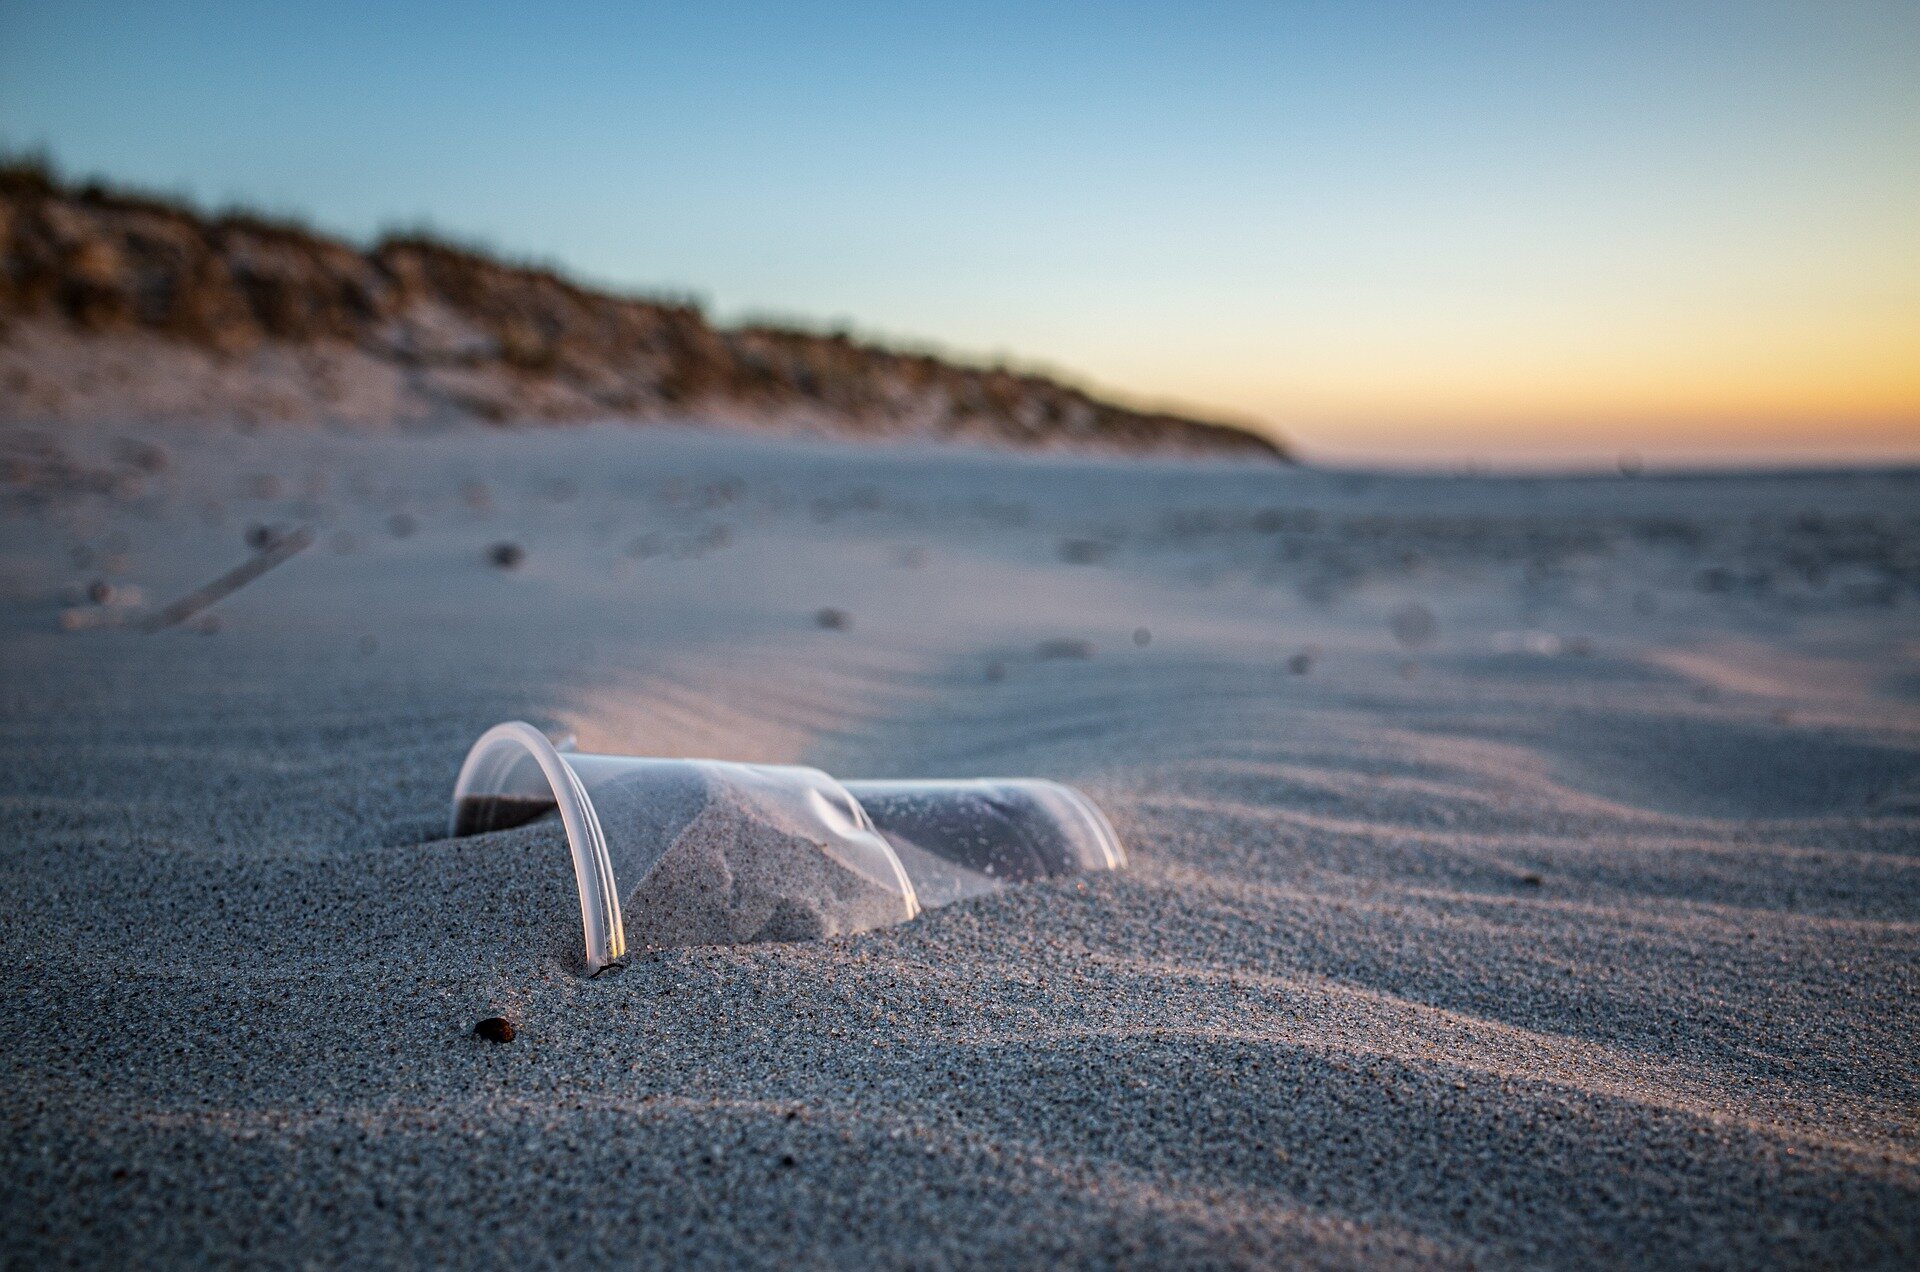 Zdjęcie przestawiające piaszczystą plażę o zachodzie słońca. Na pierwszym planie znajduje się częściowo zakopany w piasku kubek wykonany z tworzywa sztucznego.